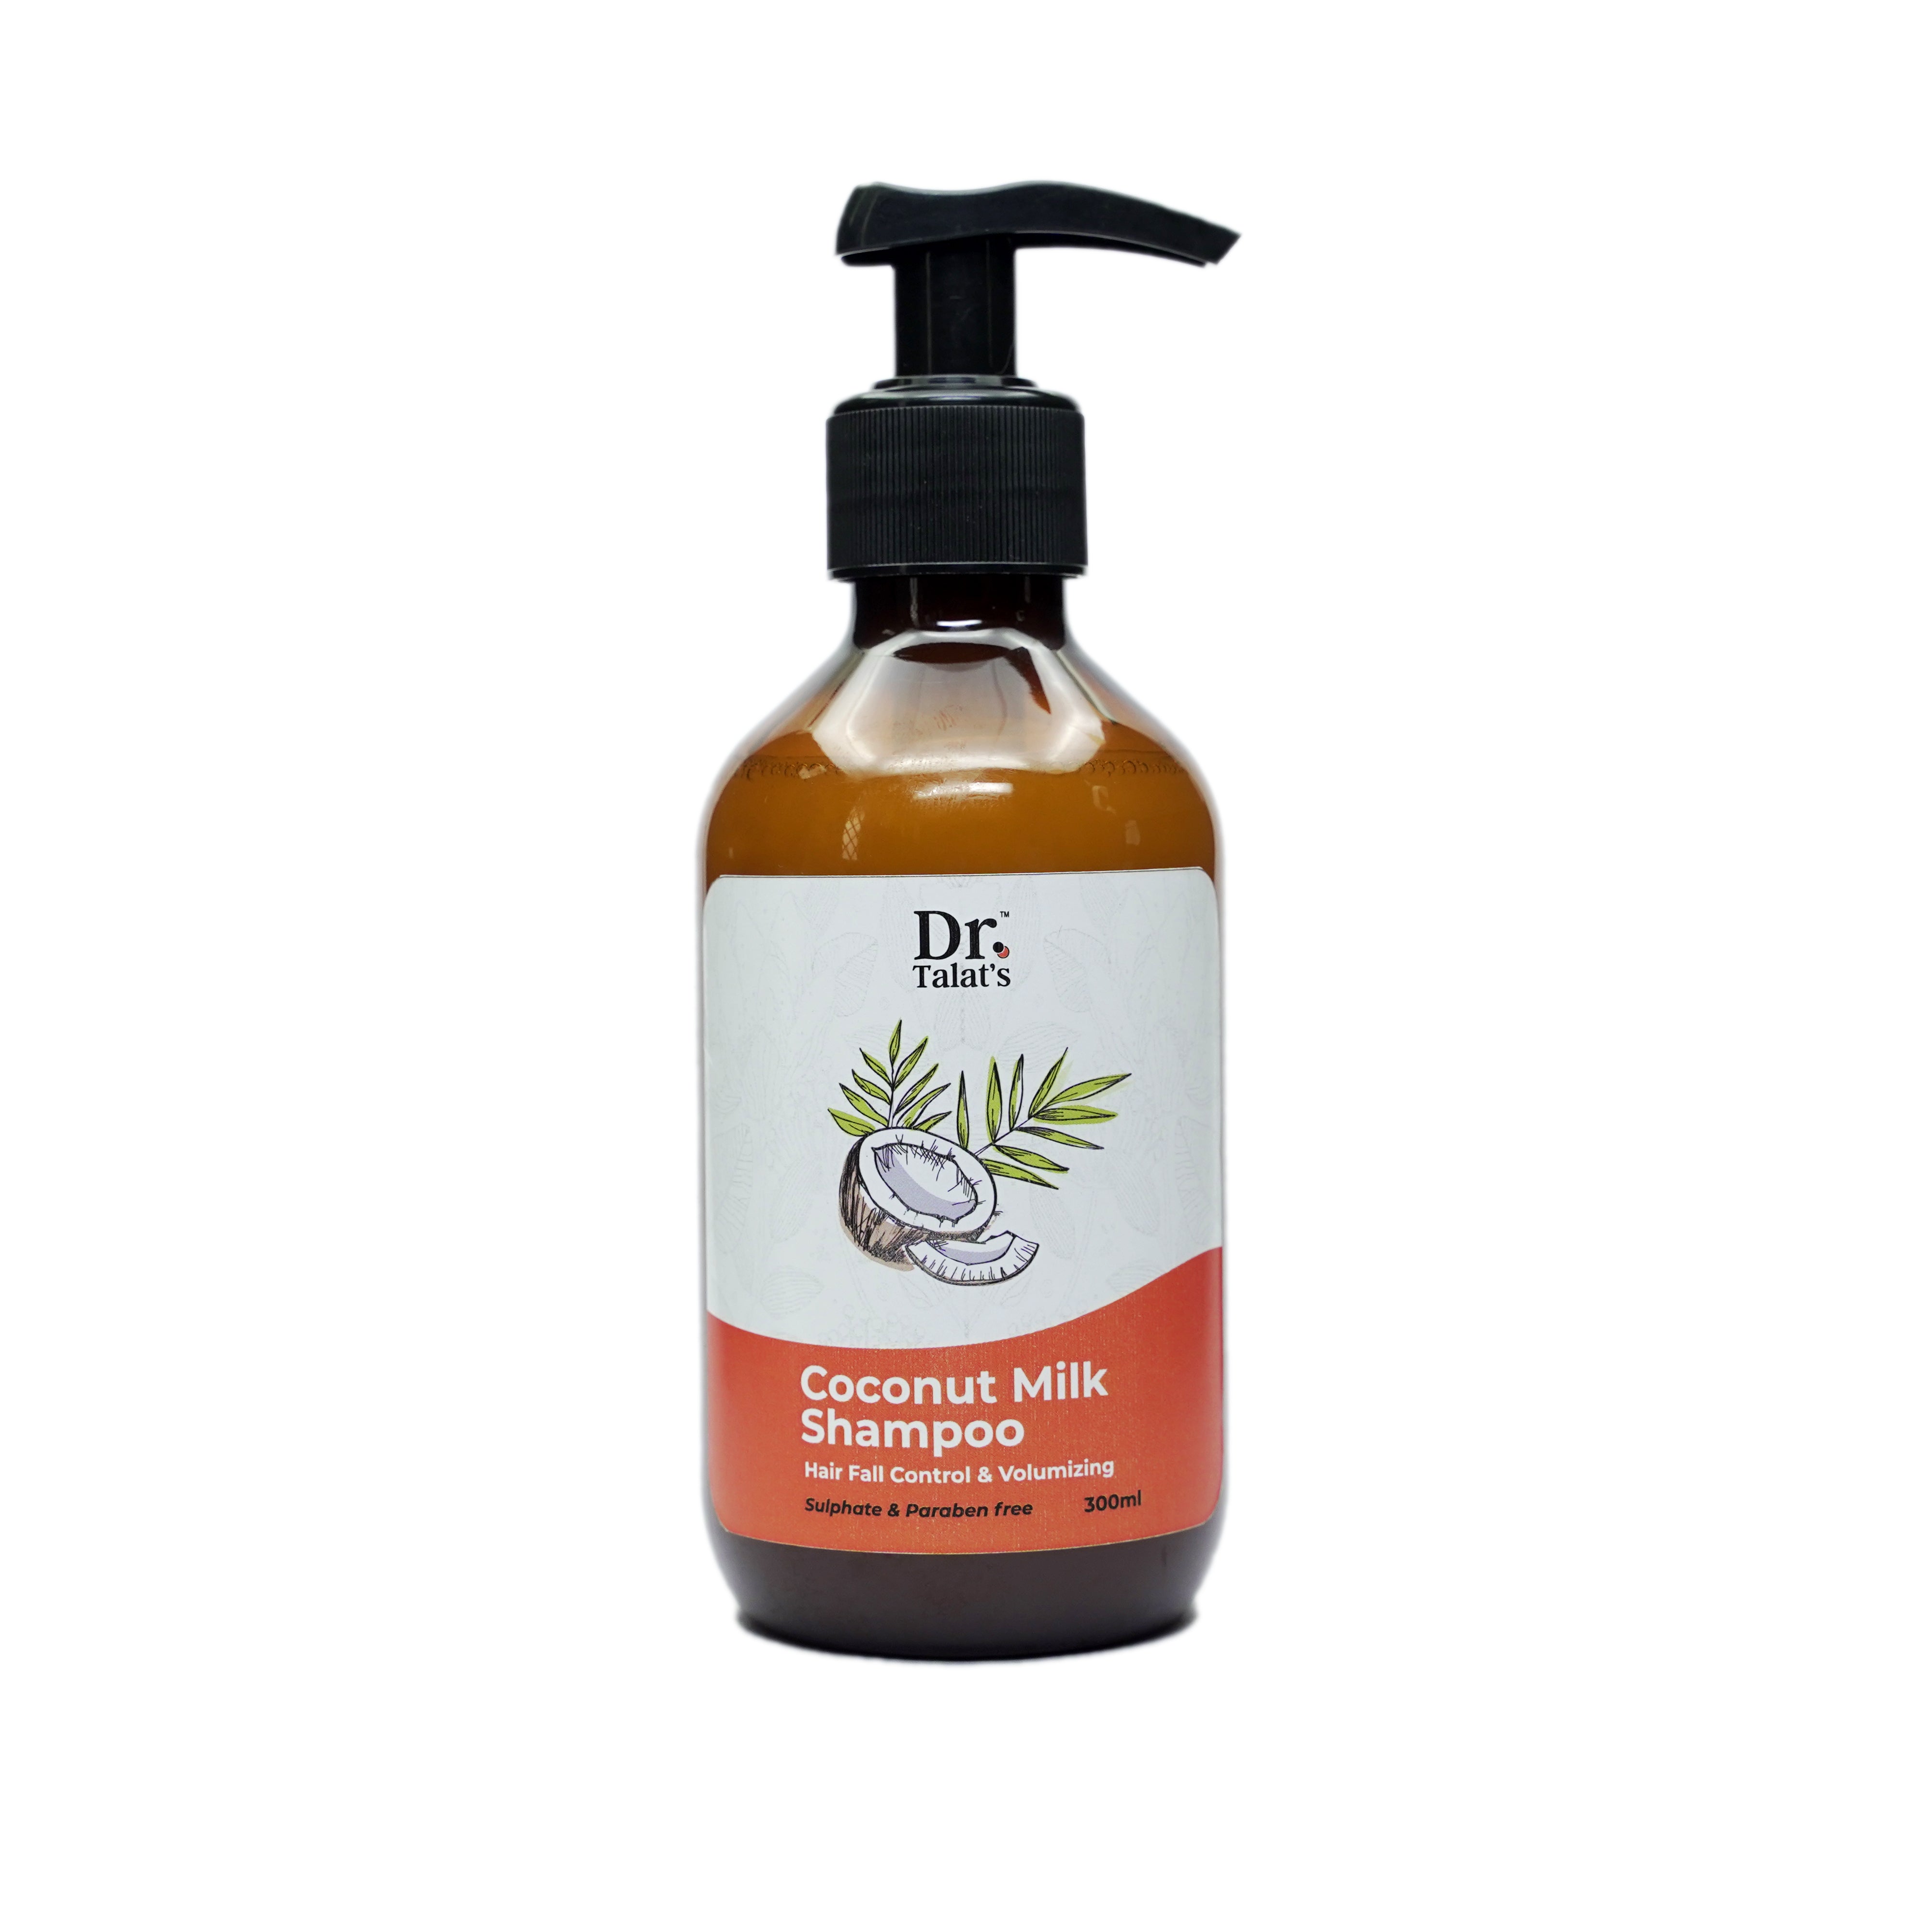 Dream care Coconut Milk shampoo - Mild & Conditioning